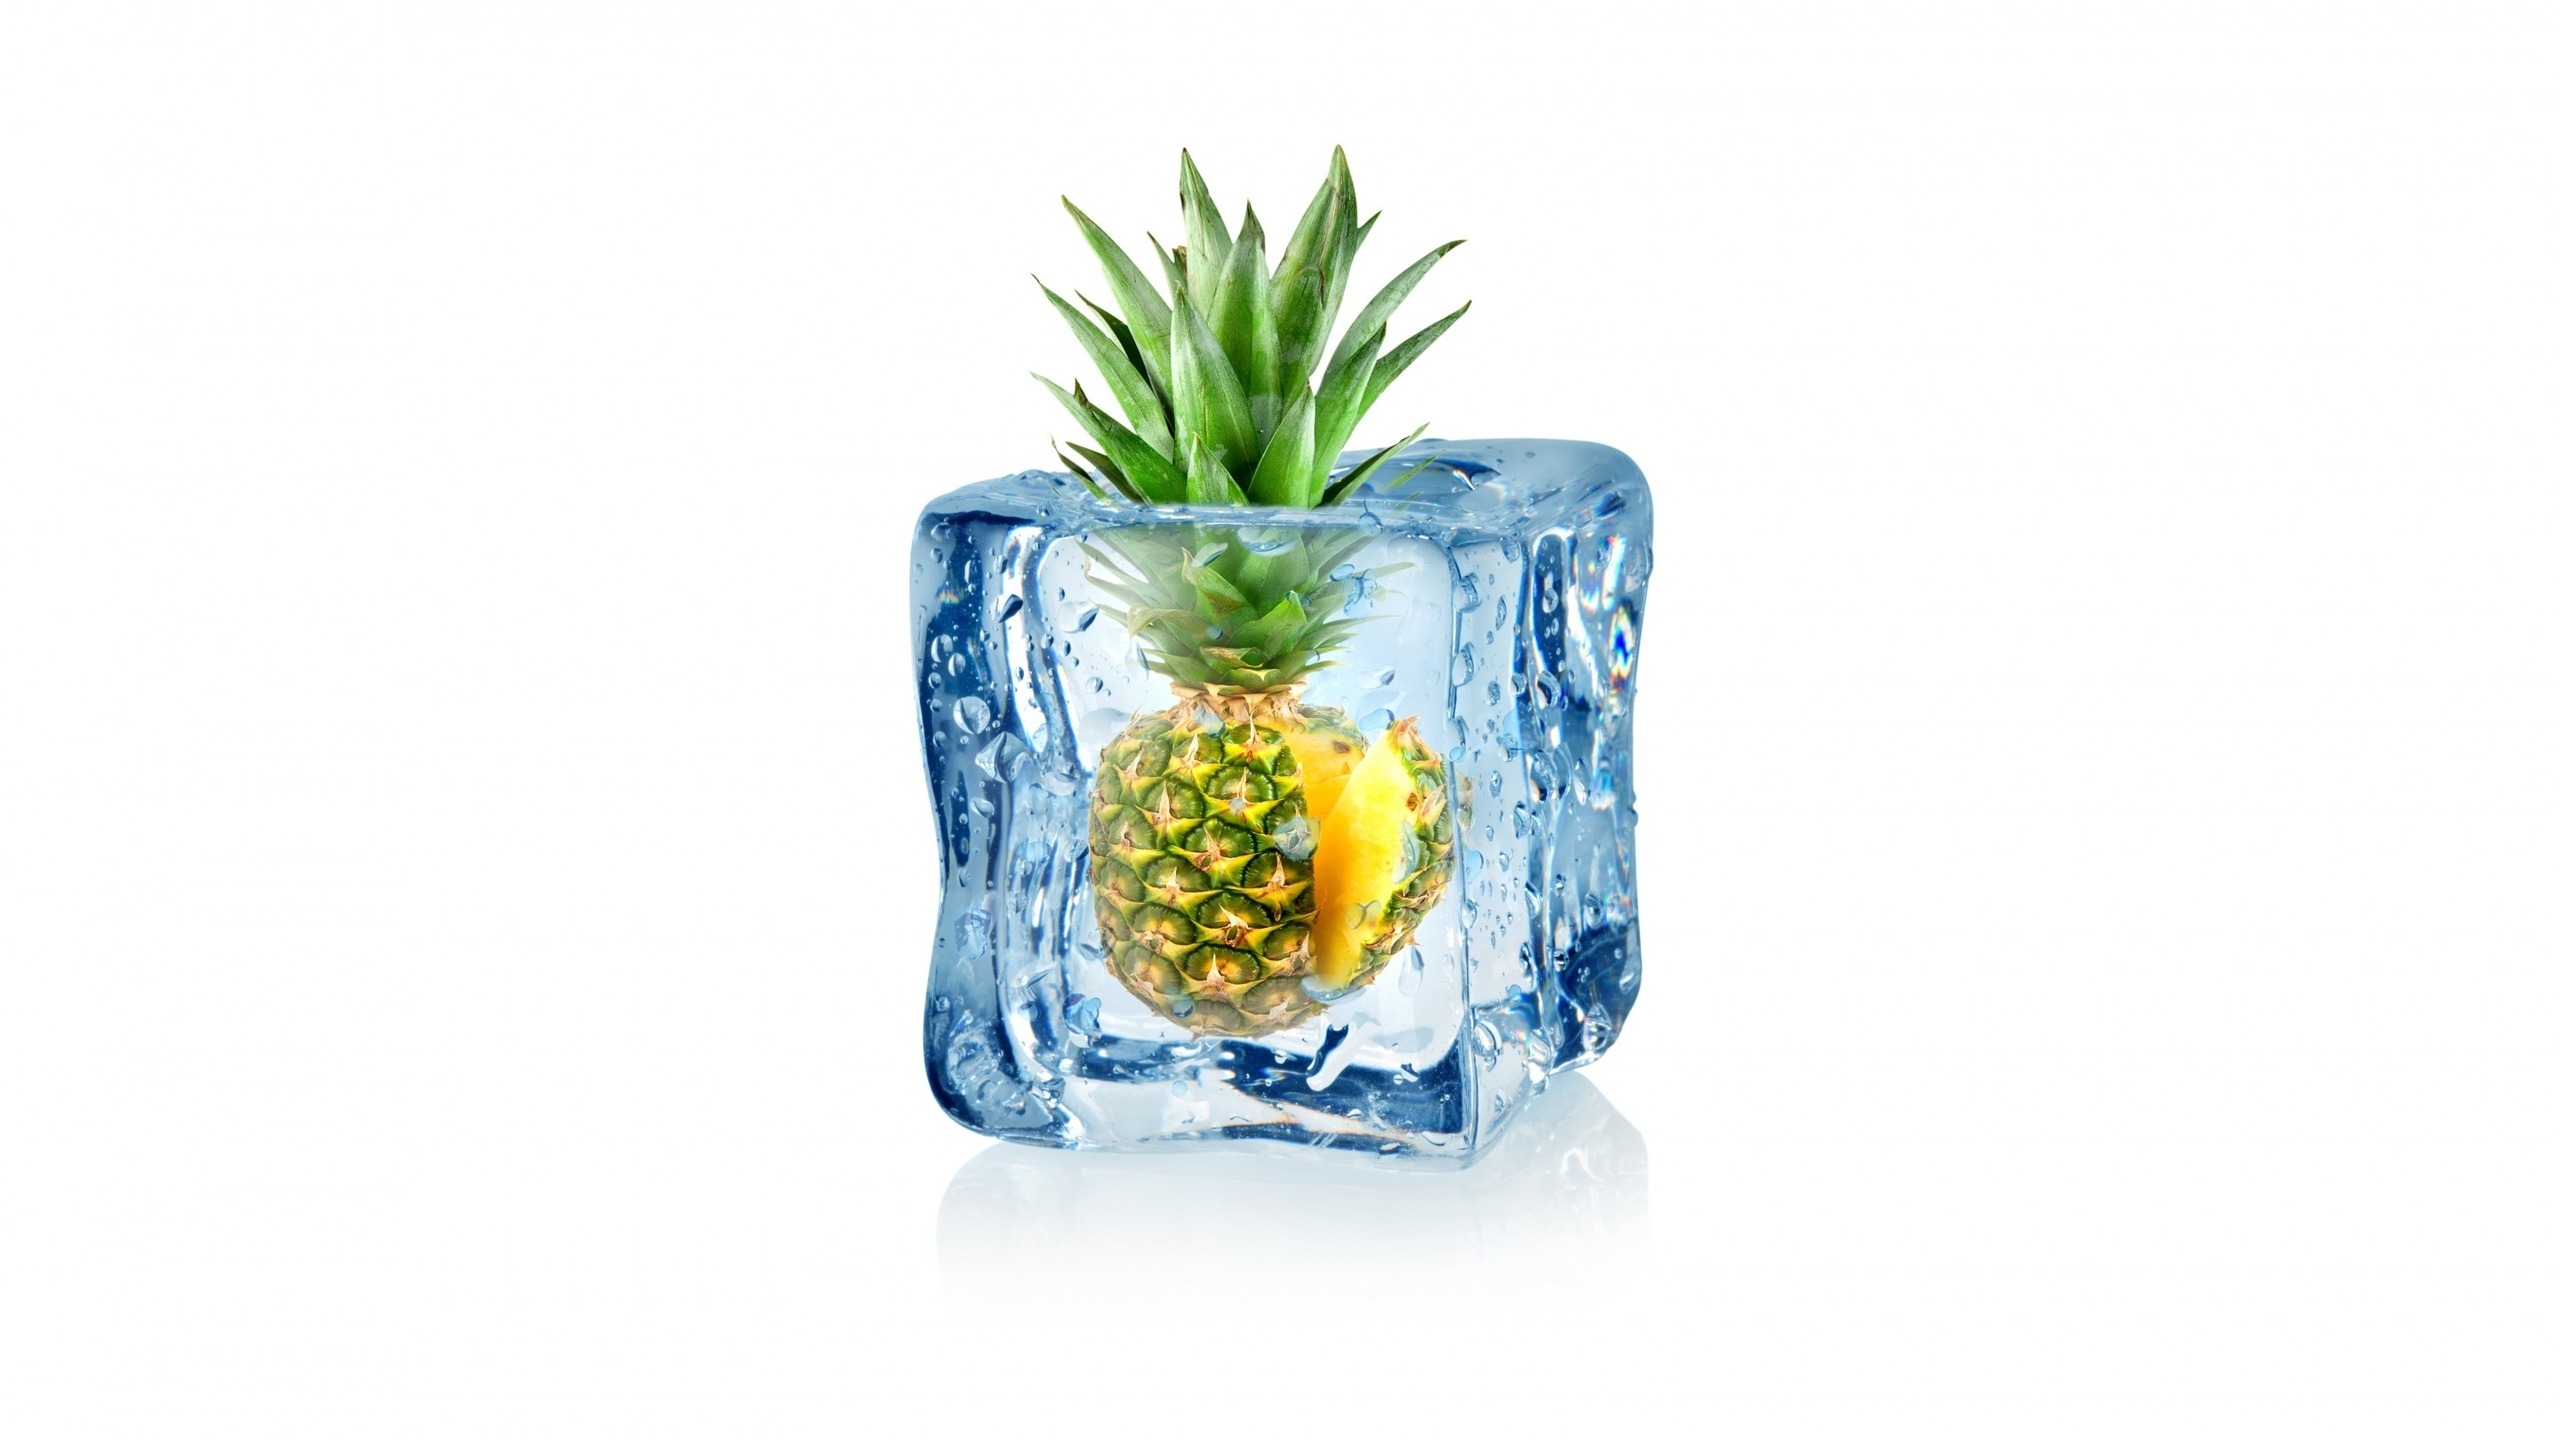 Frozen Pineapple for 2560x1440 HDTV resolution